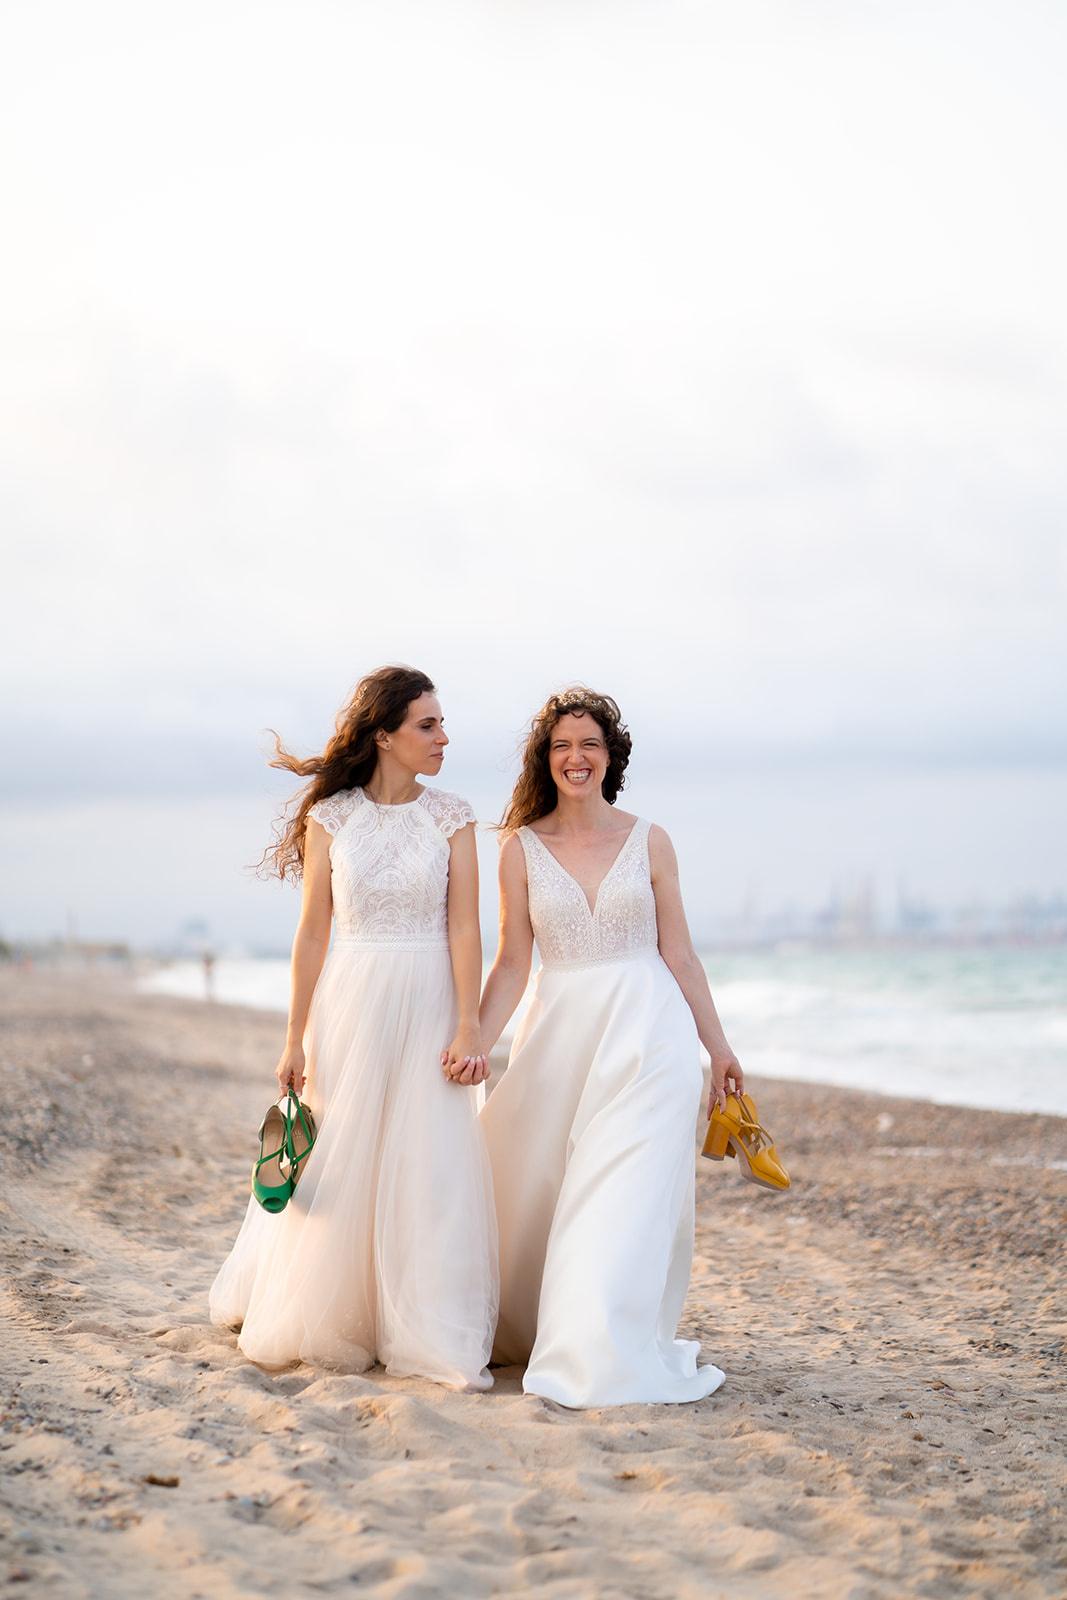 DDos chicas vestidas de novia caminan por la playa cogidas de la mano